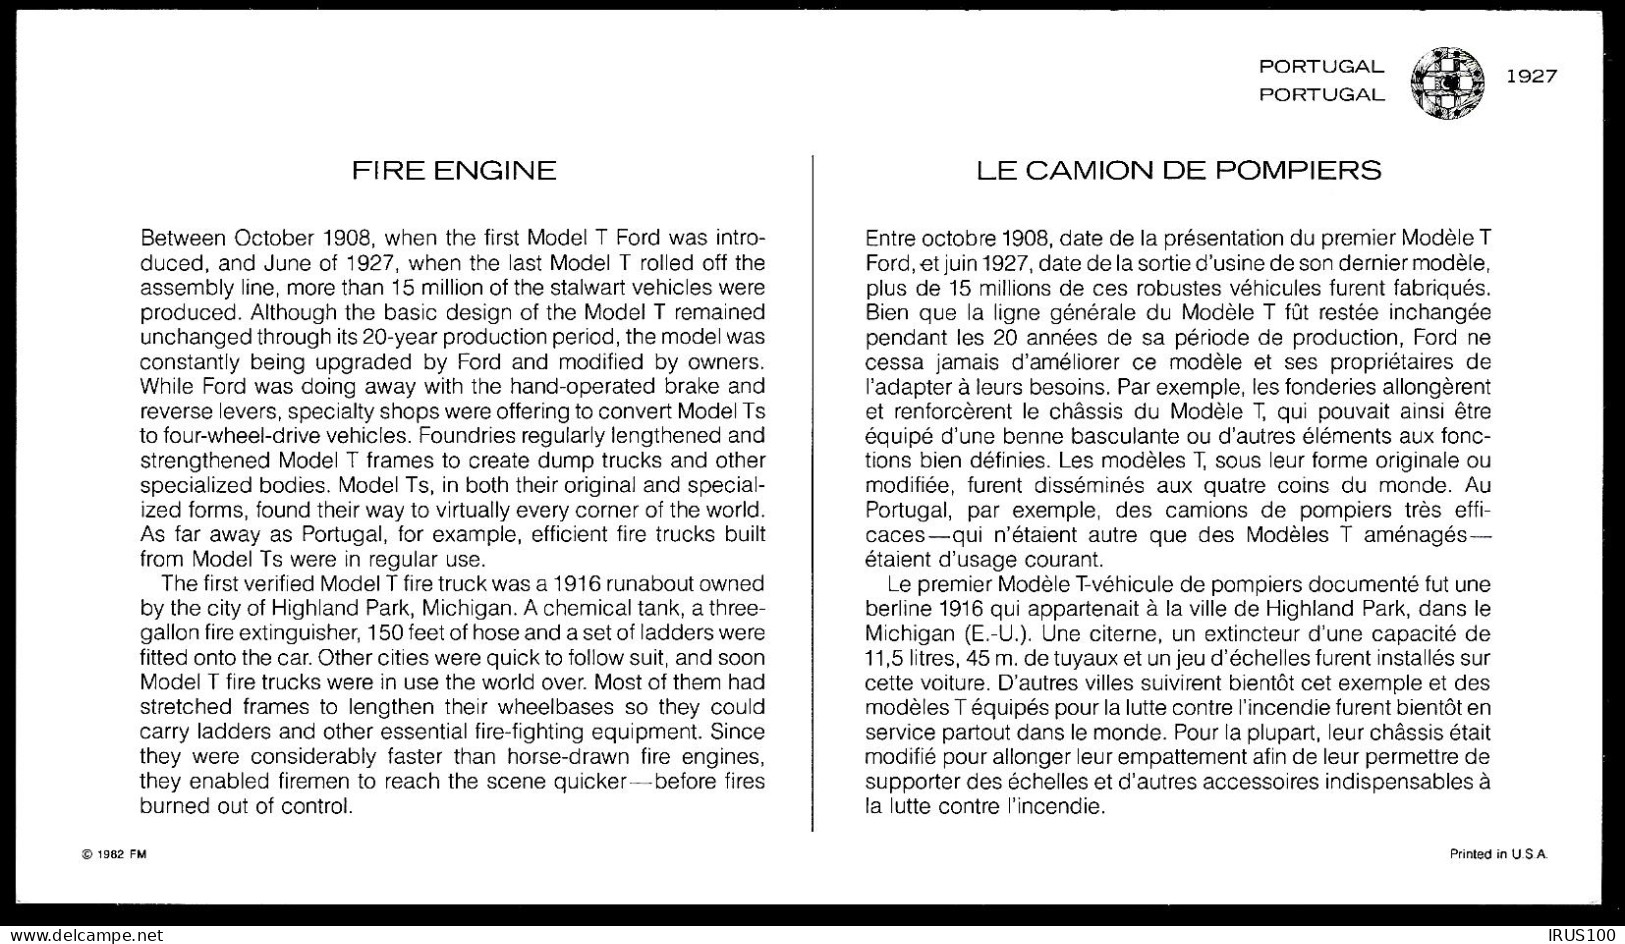 PORTUGAL - POMPIERS / HISTOIRE DES TRANSPORTS - (3 DOCUMENTS) - Firemen